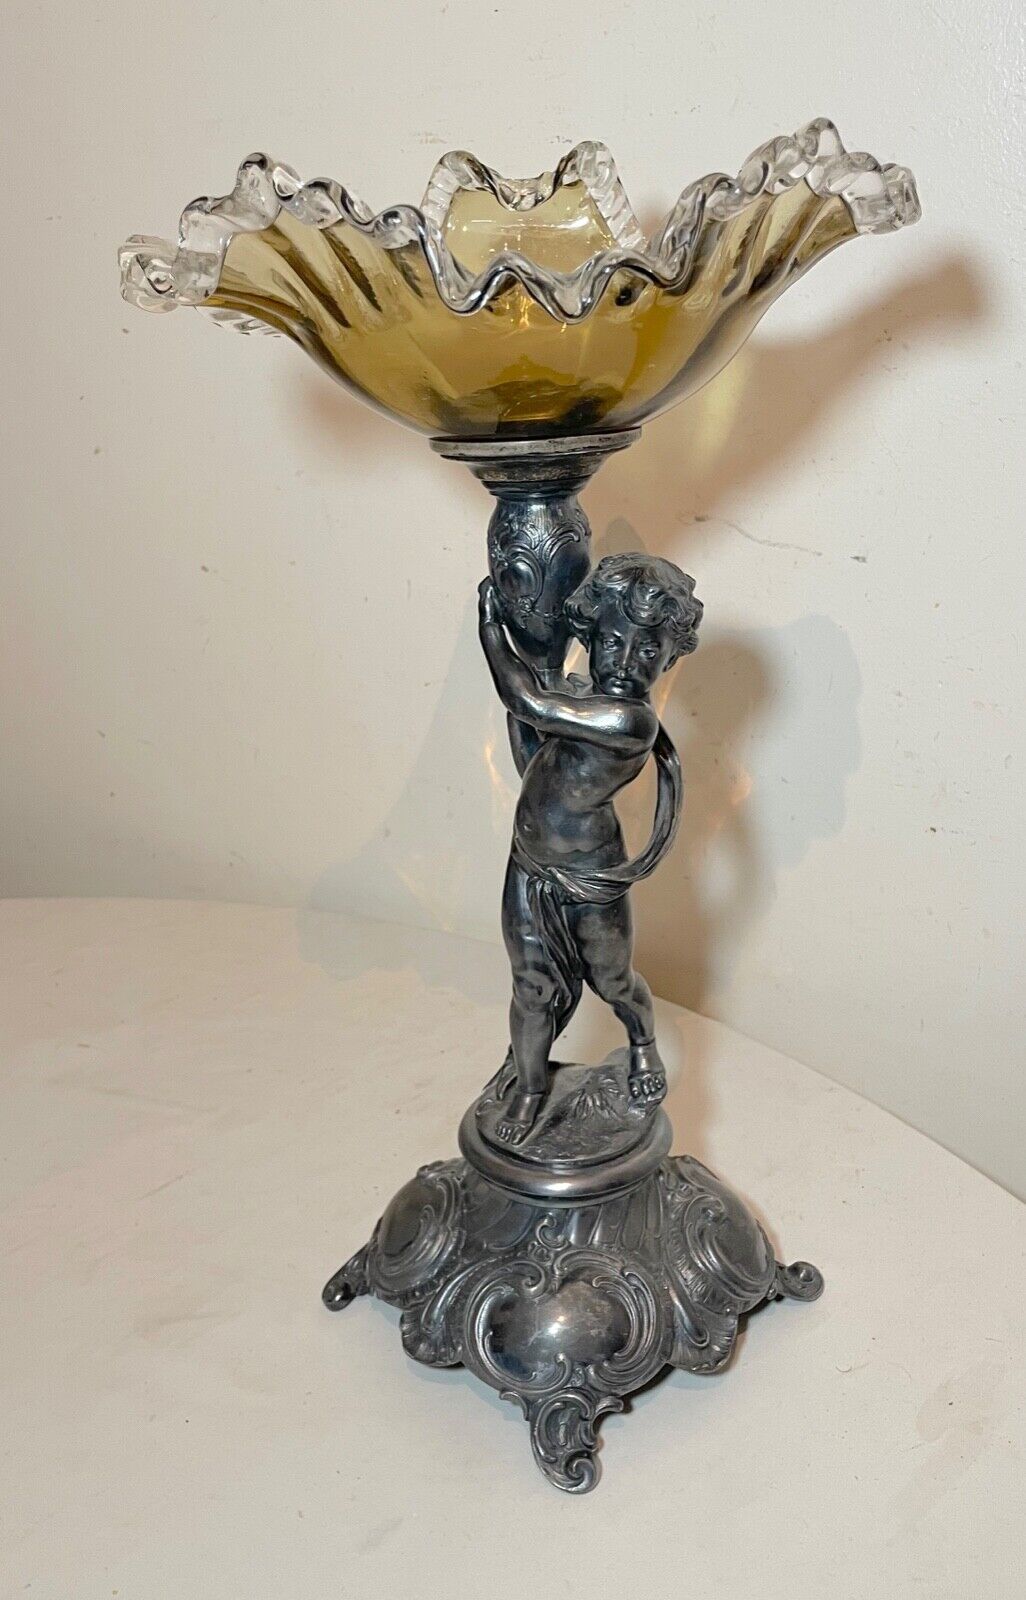 antique ornate silverplate cherub figural blown glass centerpiece tazza compote